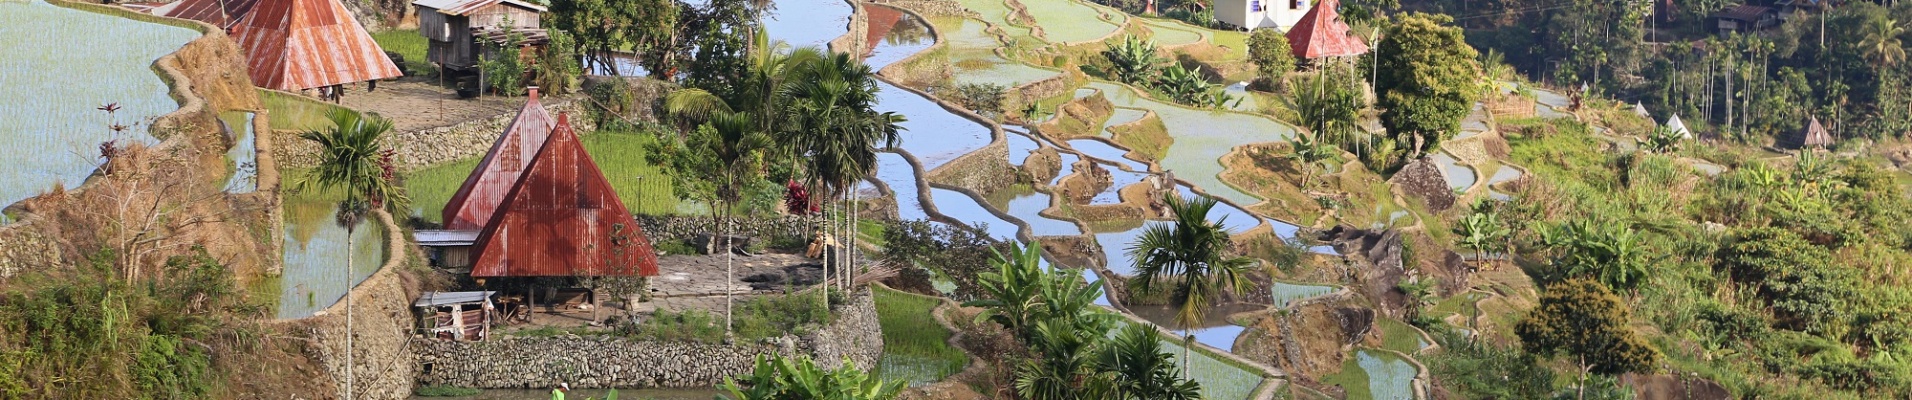 Maisons et rizières à Banaue